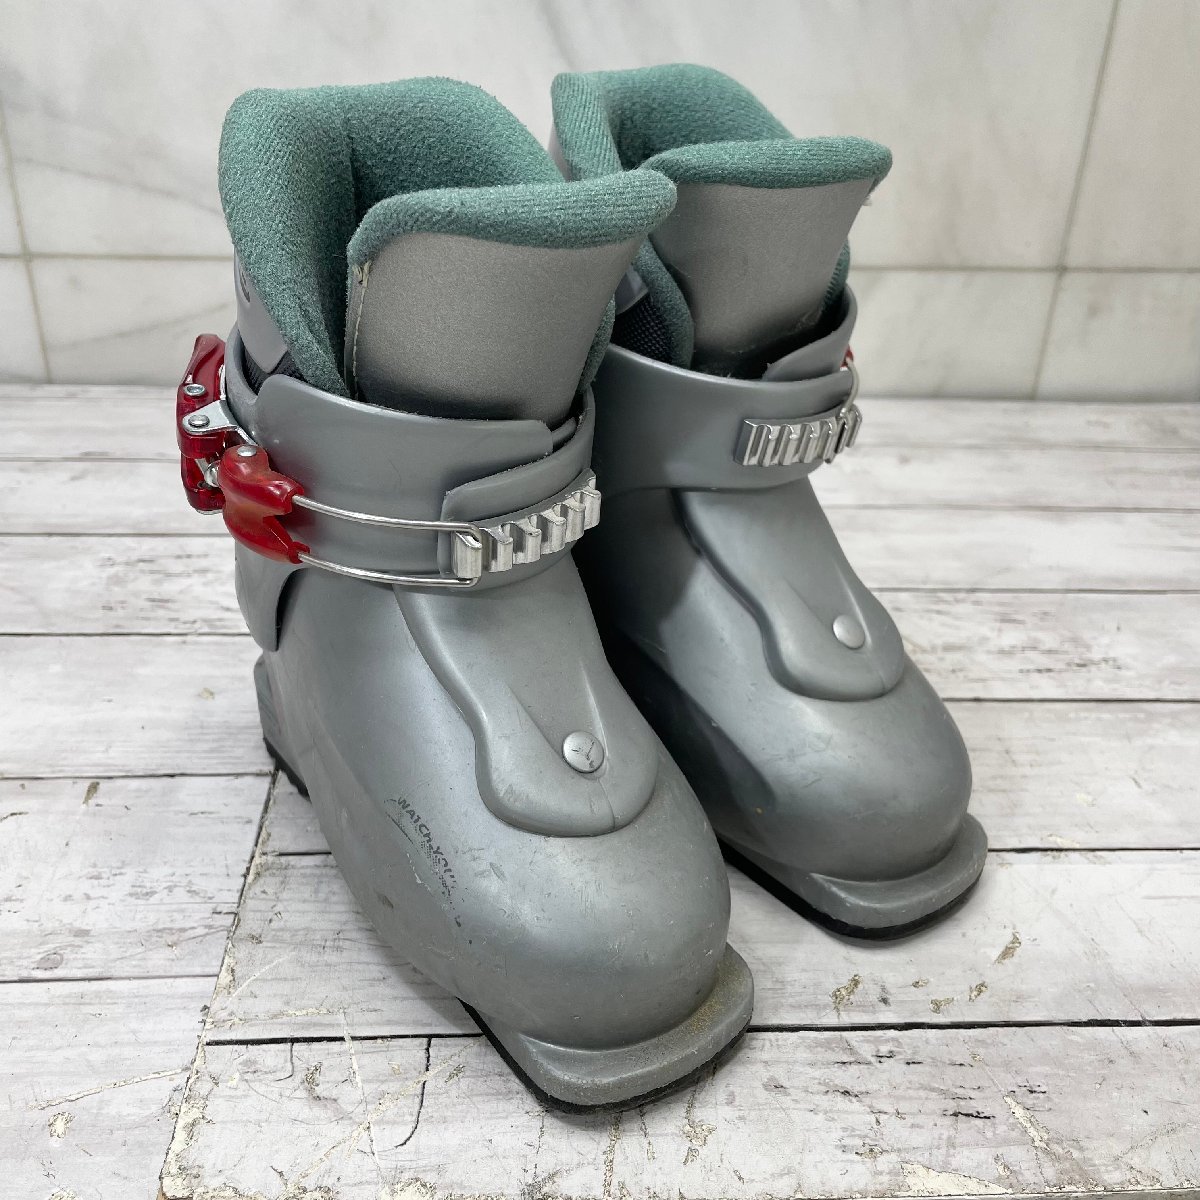 -OG- HEADjuni ASCII ботинки carve x1 б/у товар подошва размер 221mm лыжи обувь детский winter спорт зима 170-185 -T-231070